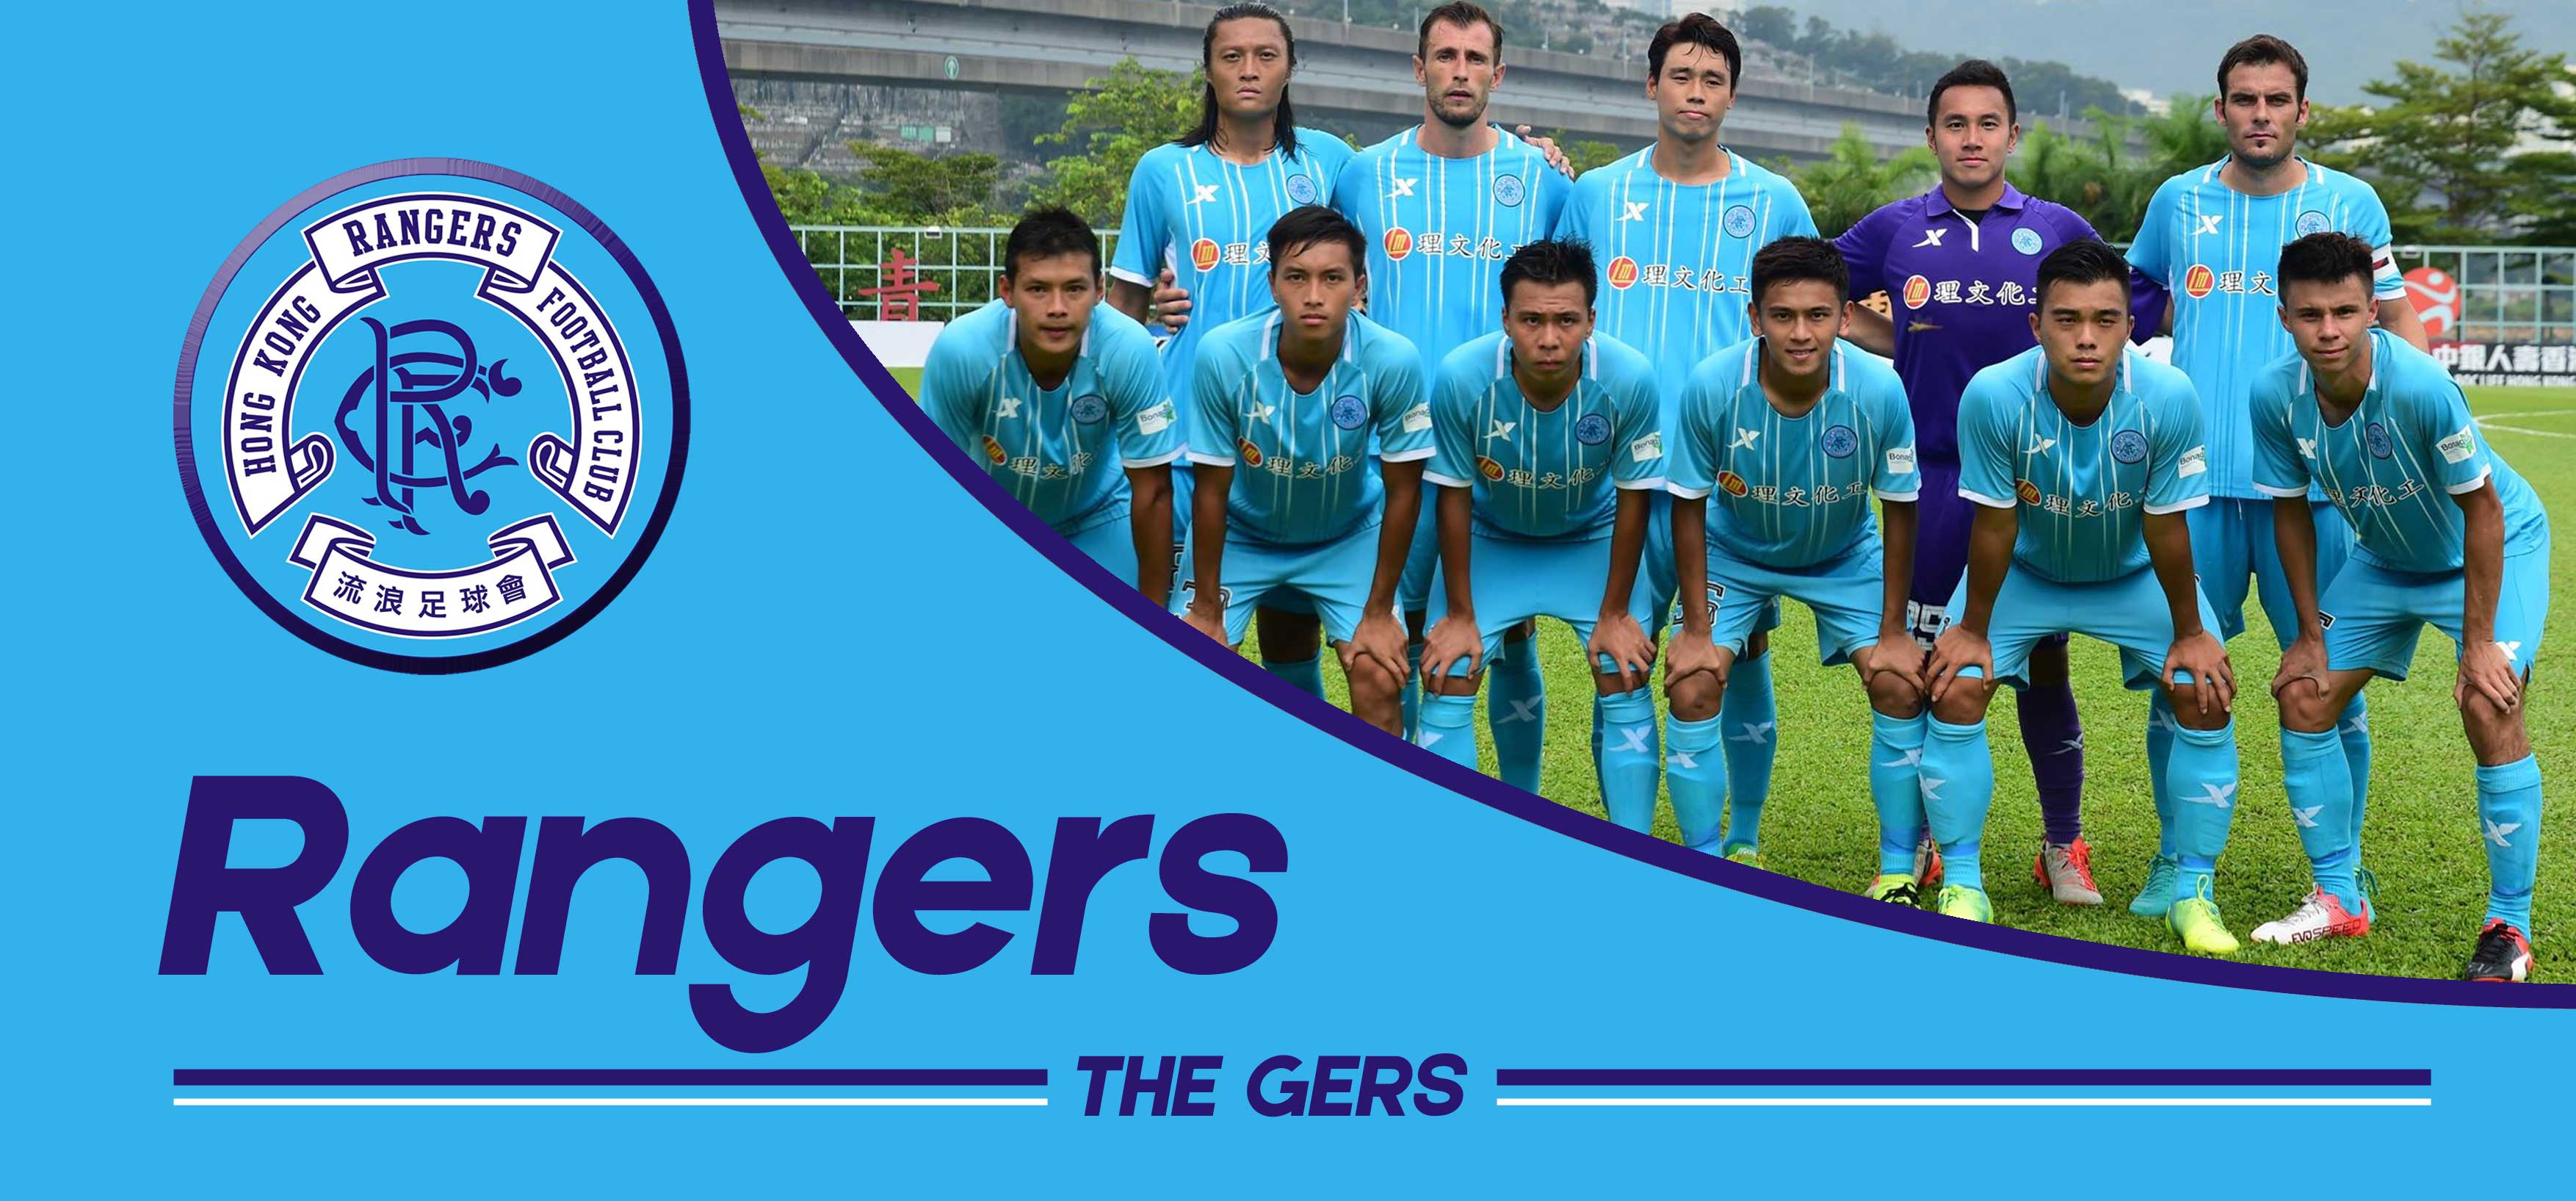 Resultado de imagem para Hong Kong Rangers Football Club